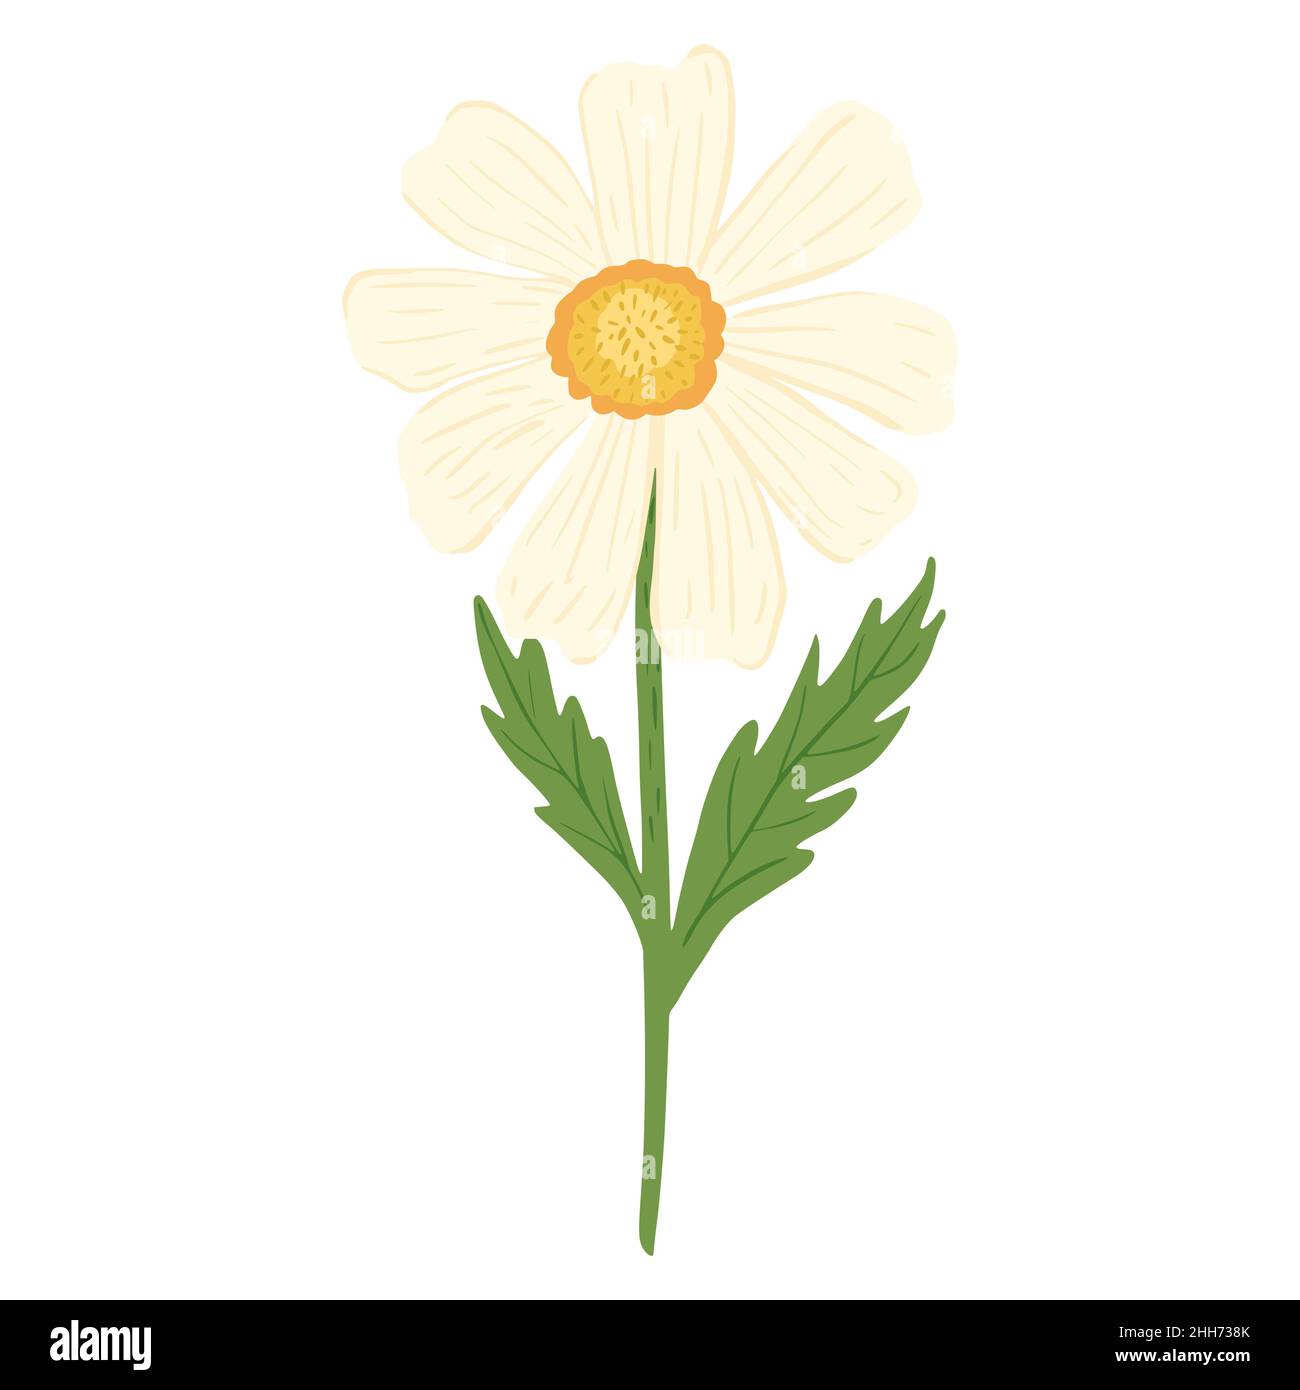 Kamille isoliert auf weißem Hintergrund. Abstrakte Blume weiße Farbe mit gelben Kern in Doodle-Stil Vektor-Illustration. Stock Vektor